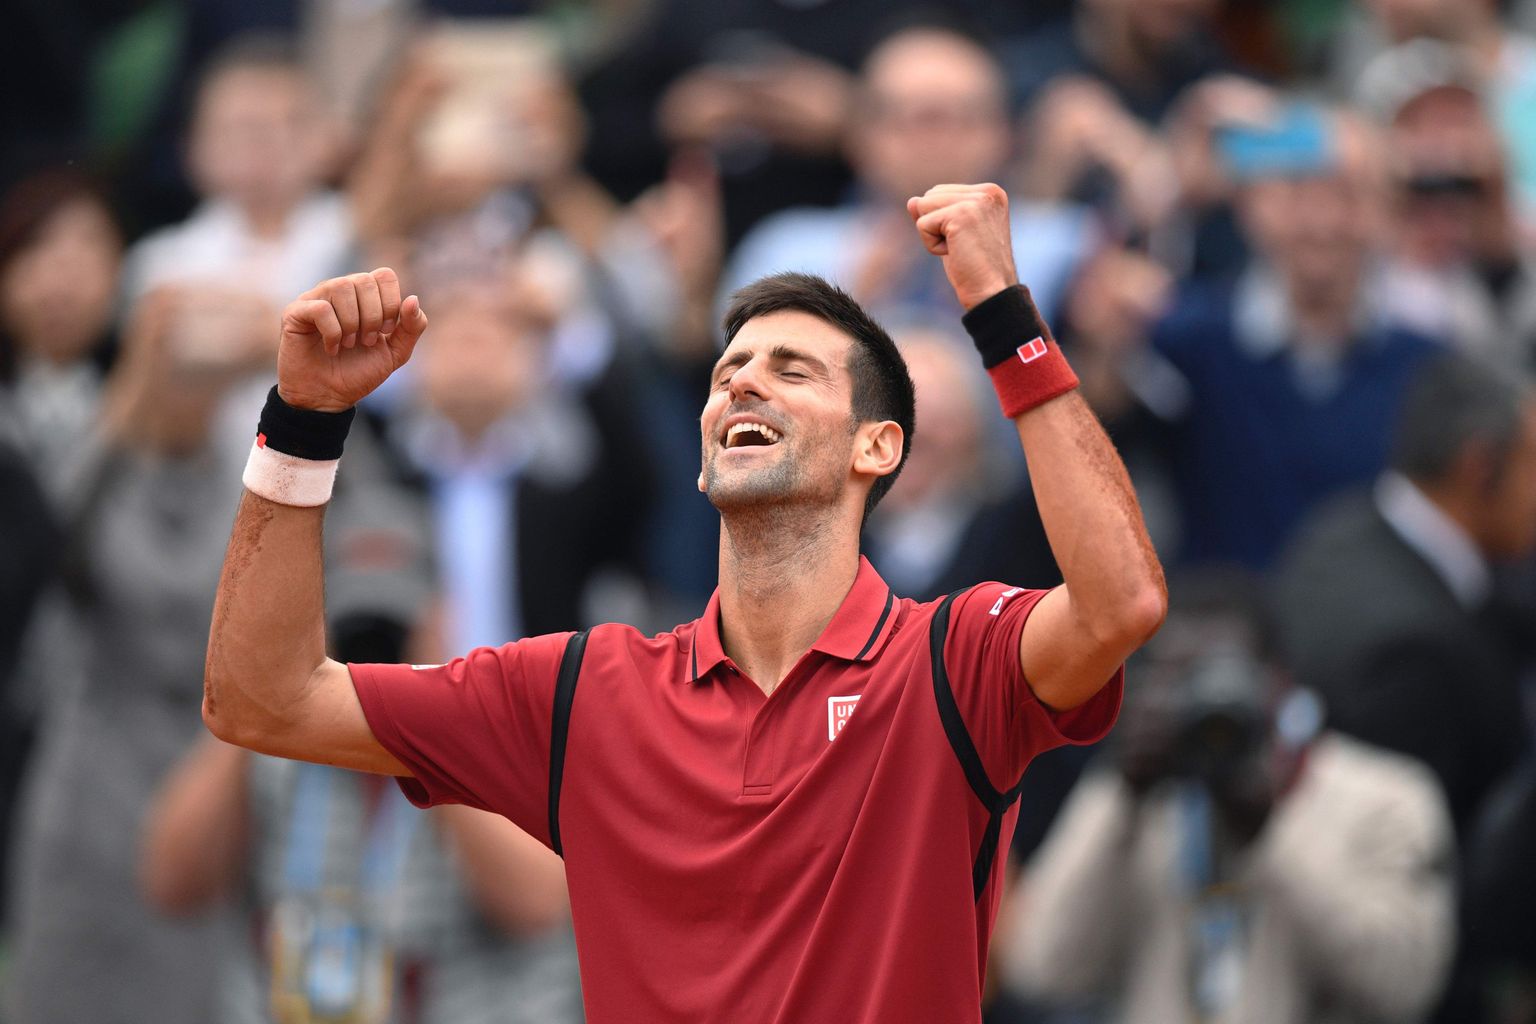 Novak Djokovic jõudis eilse võiduga vinge tähiseni: temast sai tenniseajaloo kolmas mees, kes on korraga enda käes hoidmas kõiki Suure Slämmi turniiri võite.